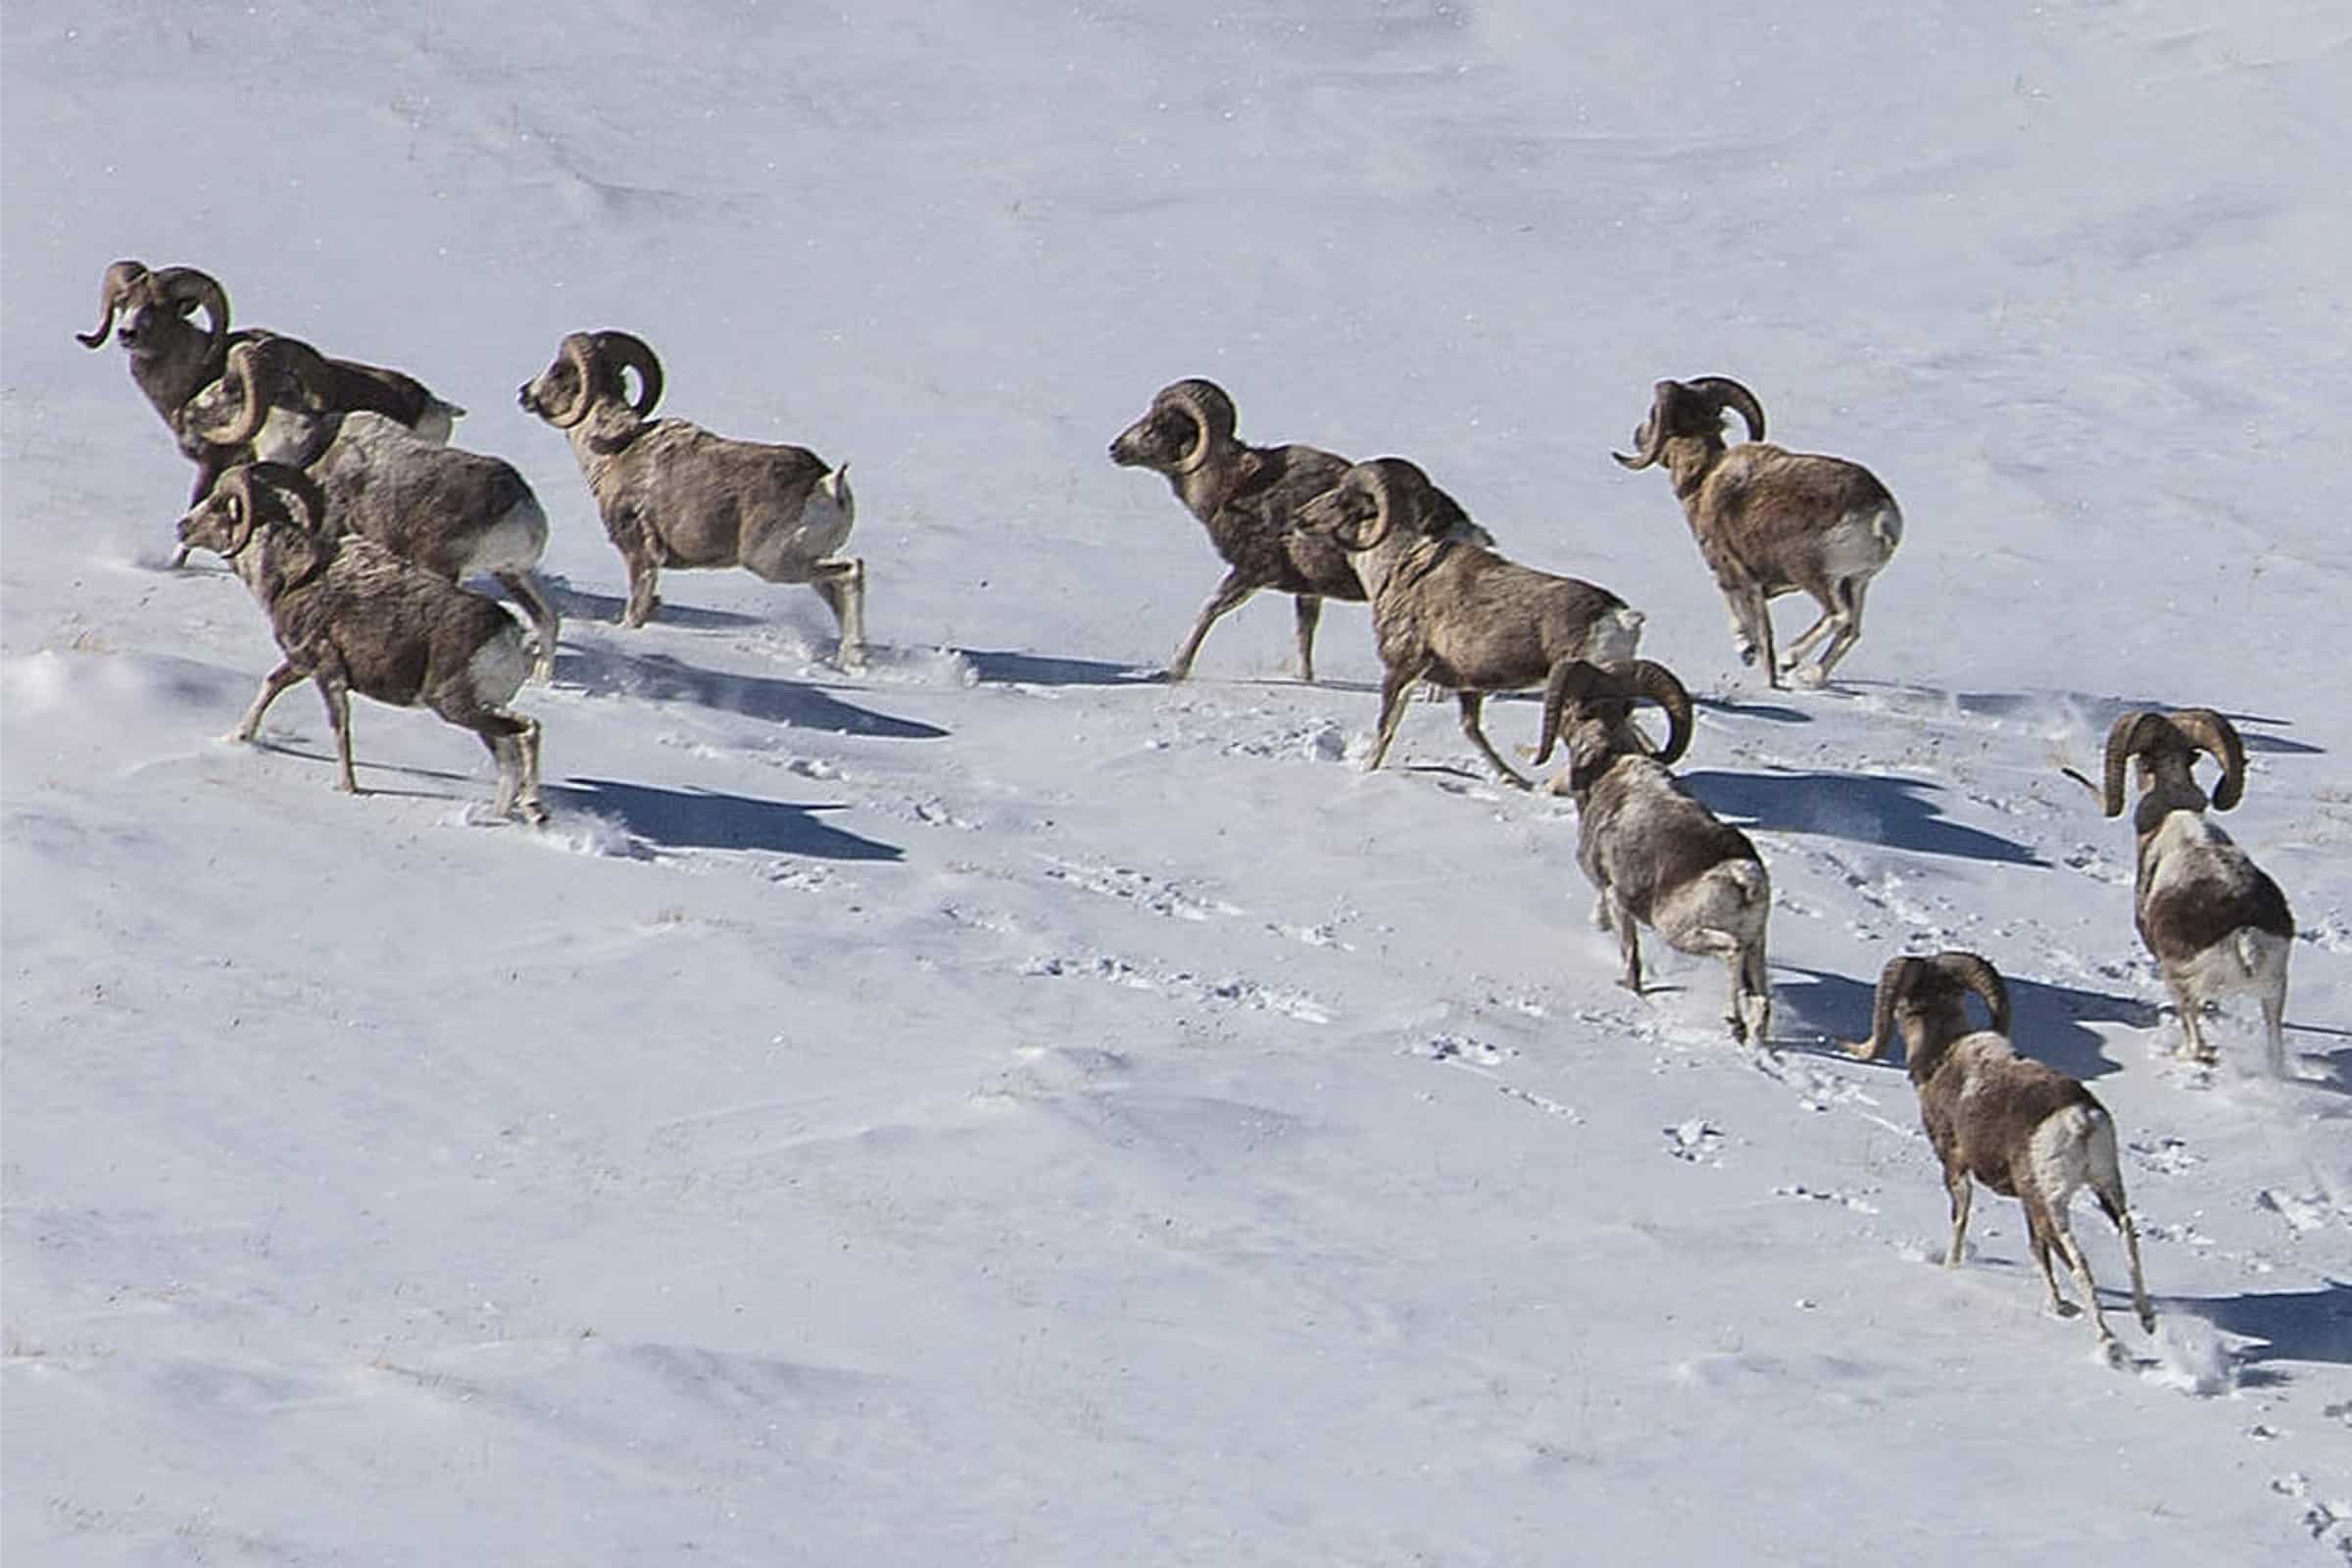 Auf dem Bild sind eine Herde der Argali-Schafe im Schnee zu sehen, die gerade einen Berg hinauf laufen. Ihre Fußstapfen sind im Schnee zu sehen. Besonders hervor stechen die imposanten Hörner der Argali-Schafe.